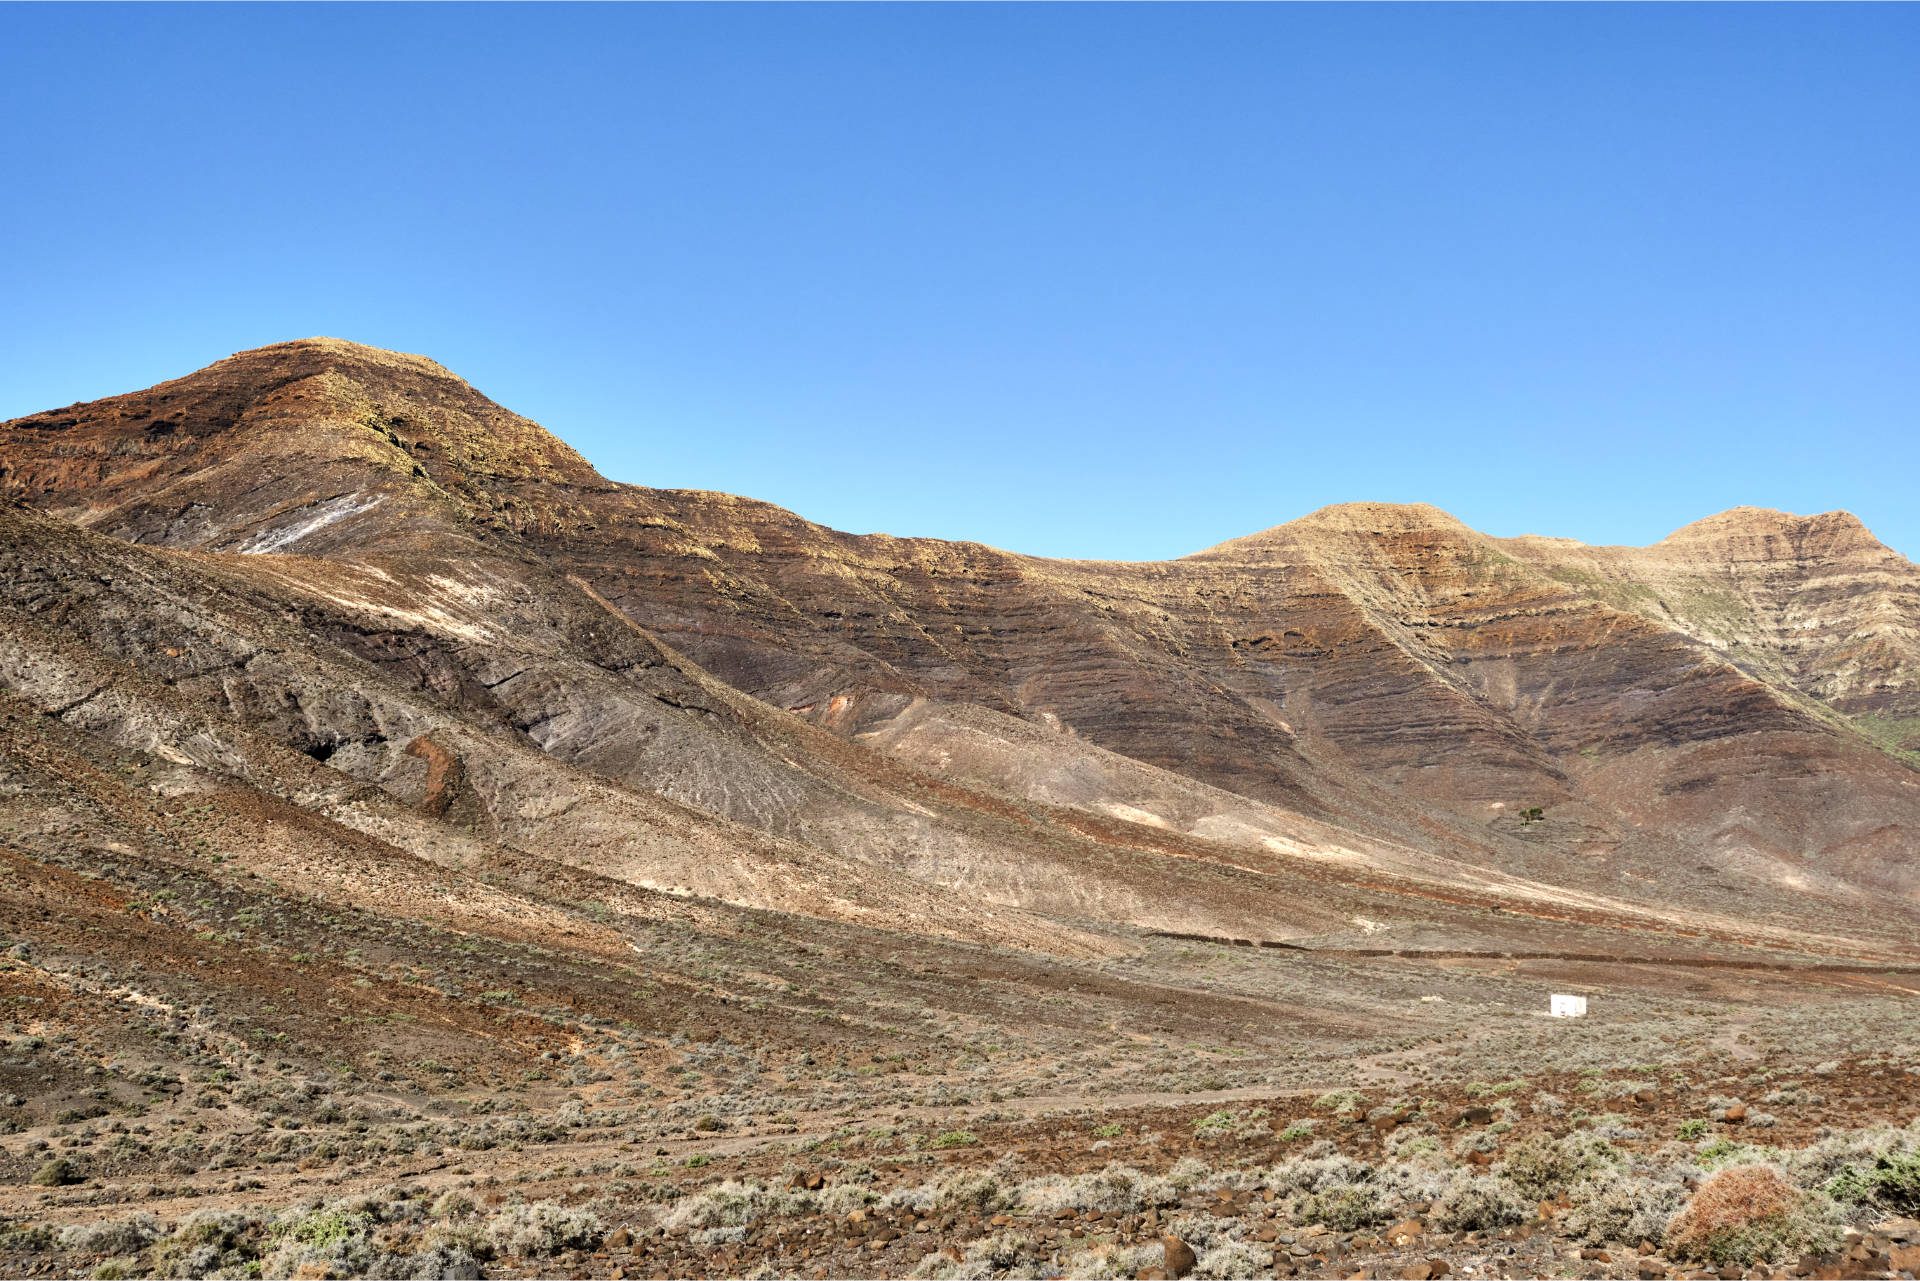 Wanderung Gran Valle - Cofete: Im Westen der markante Morro Munguía (302 m), rechts der Degollada Munguía (264 m).